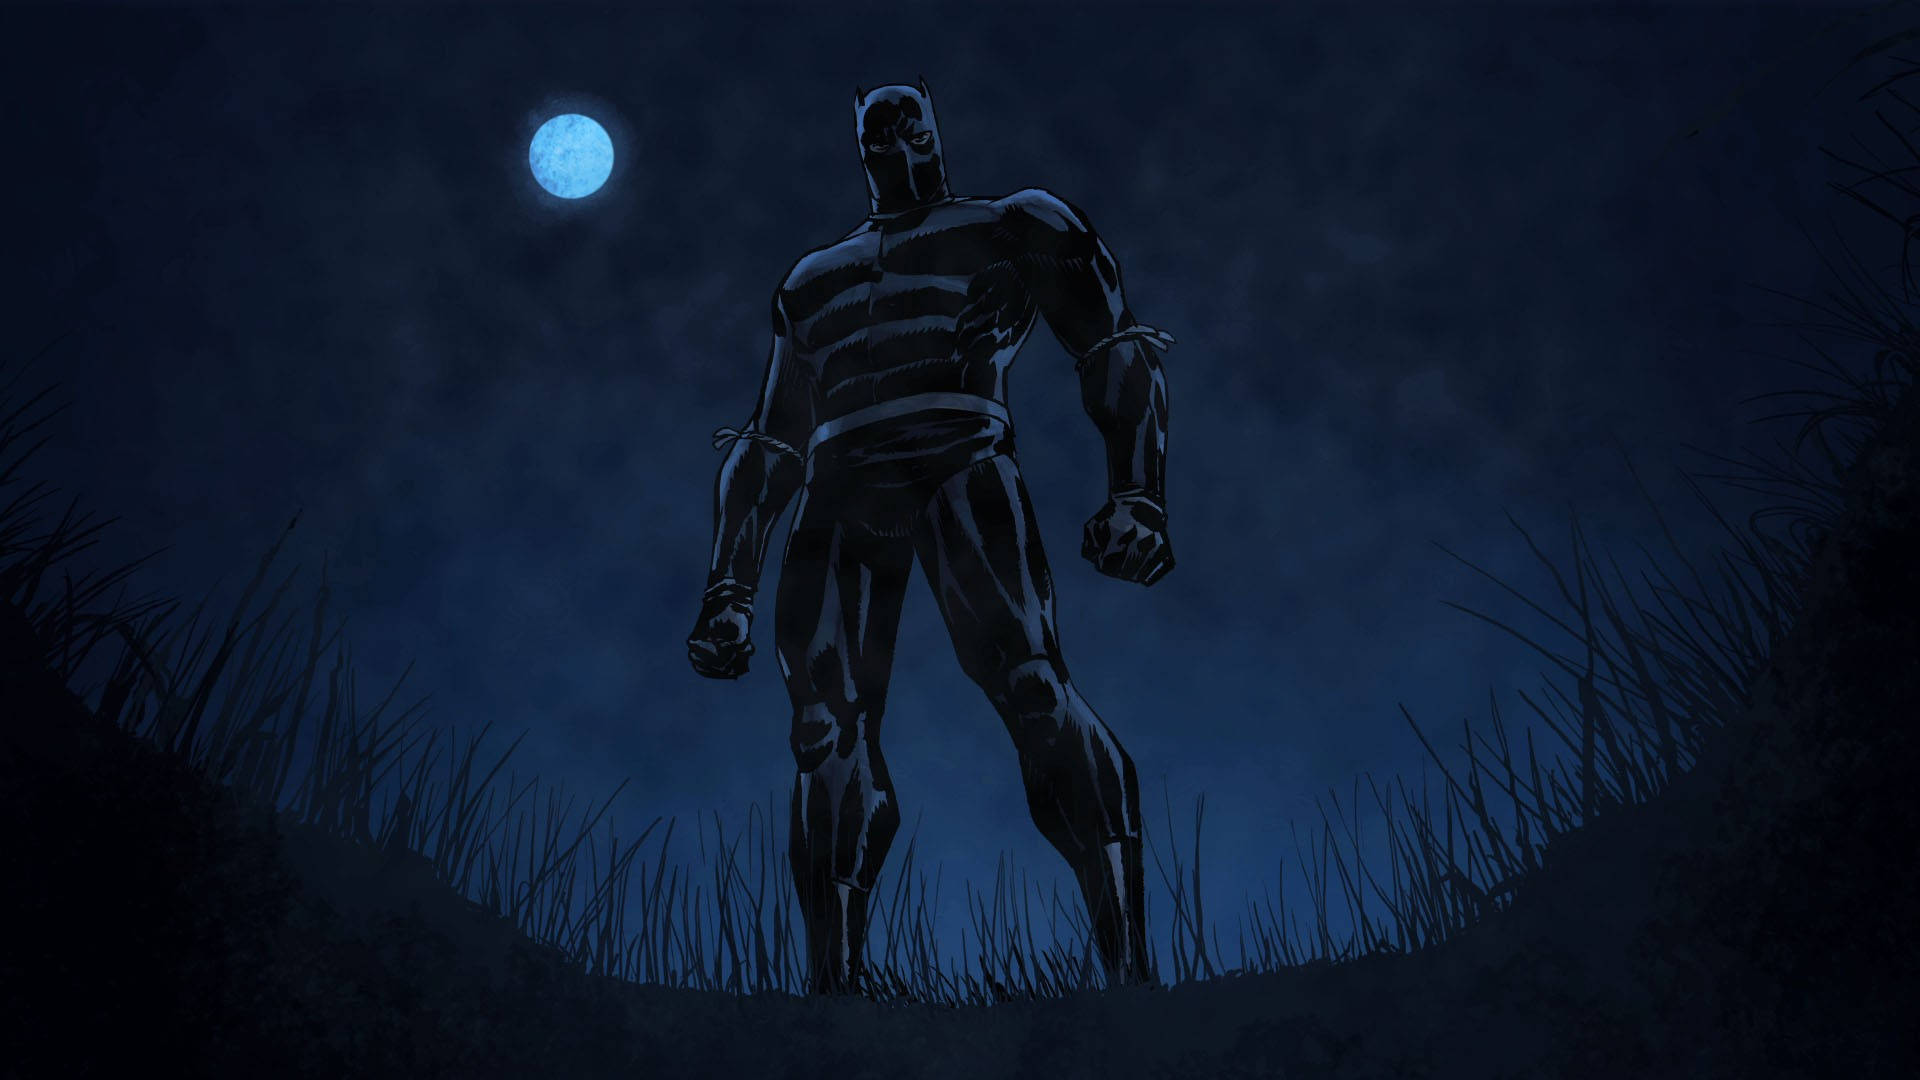 Papelde Parede De Computador Ou De Celular Com Tema Do Super-herói Pantera Negra Dos Quadrinhos. Papel de Parede